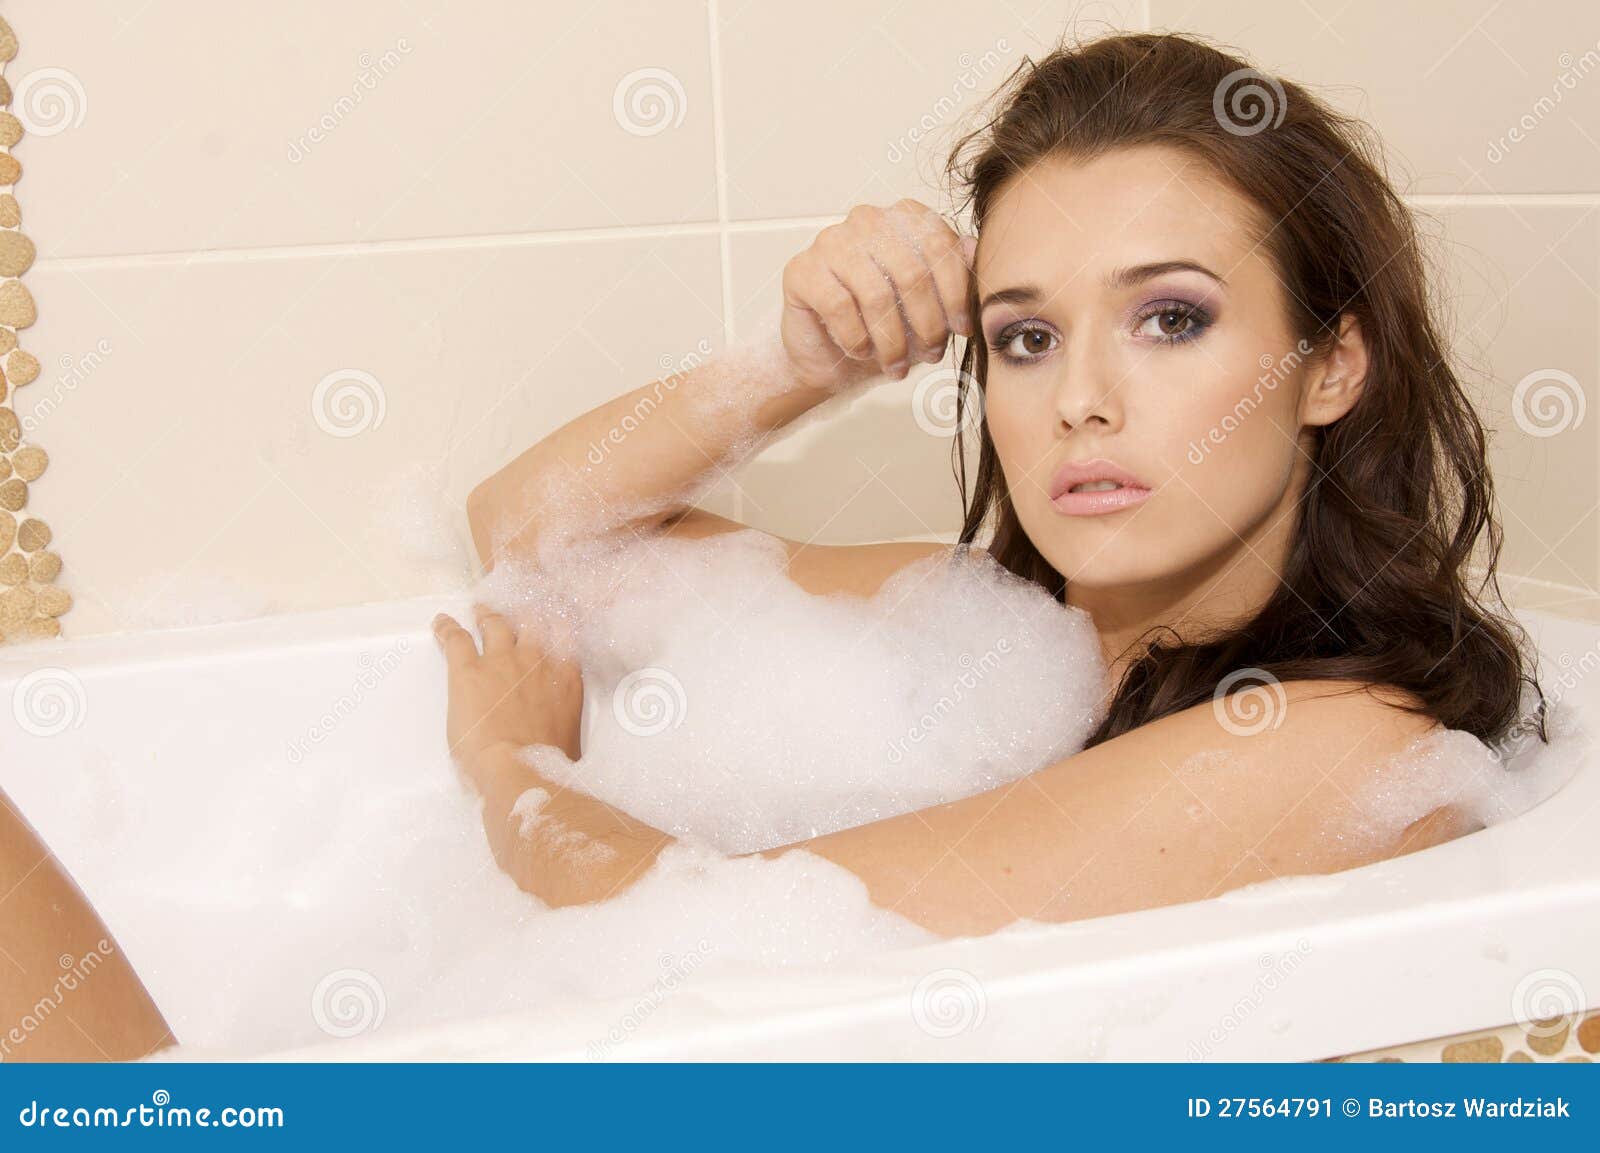 эротика голых девочек в ванной фото 95